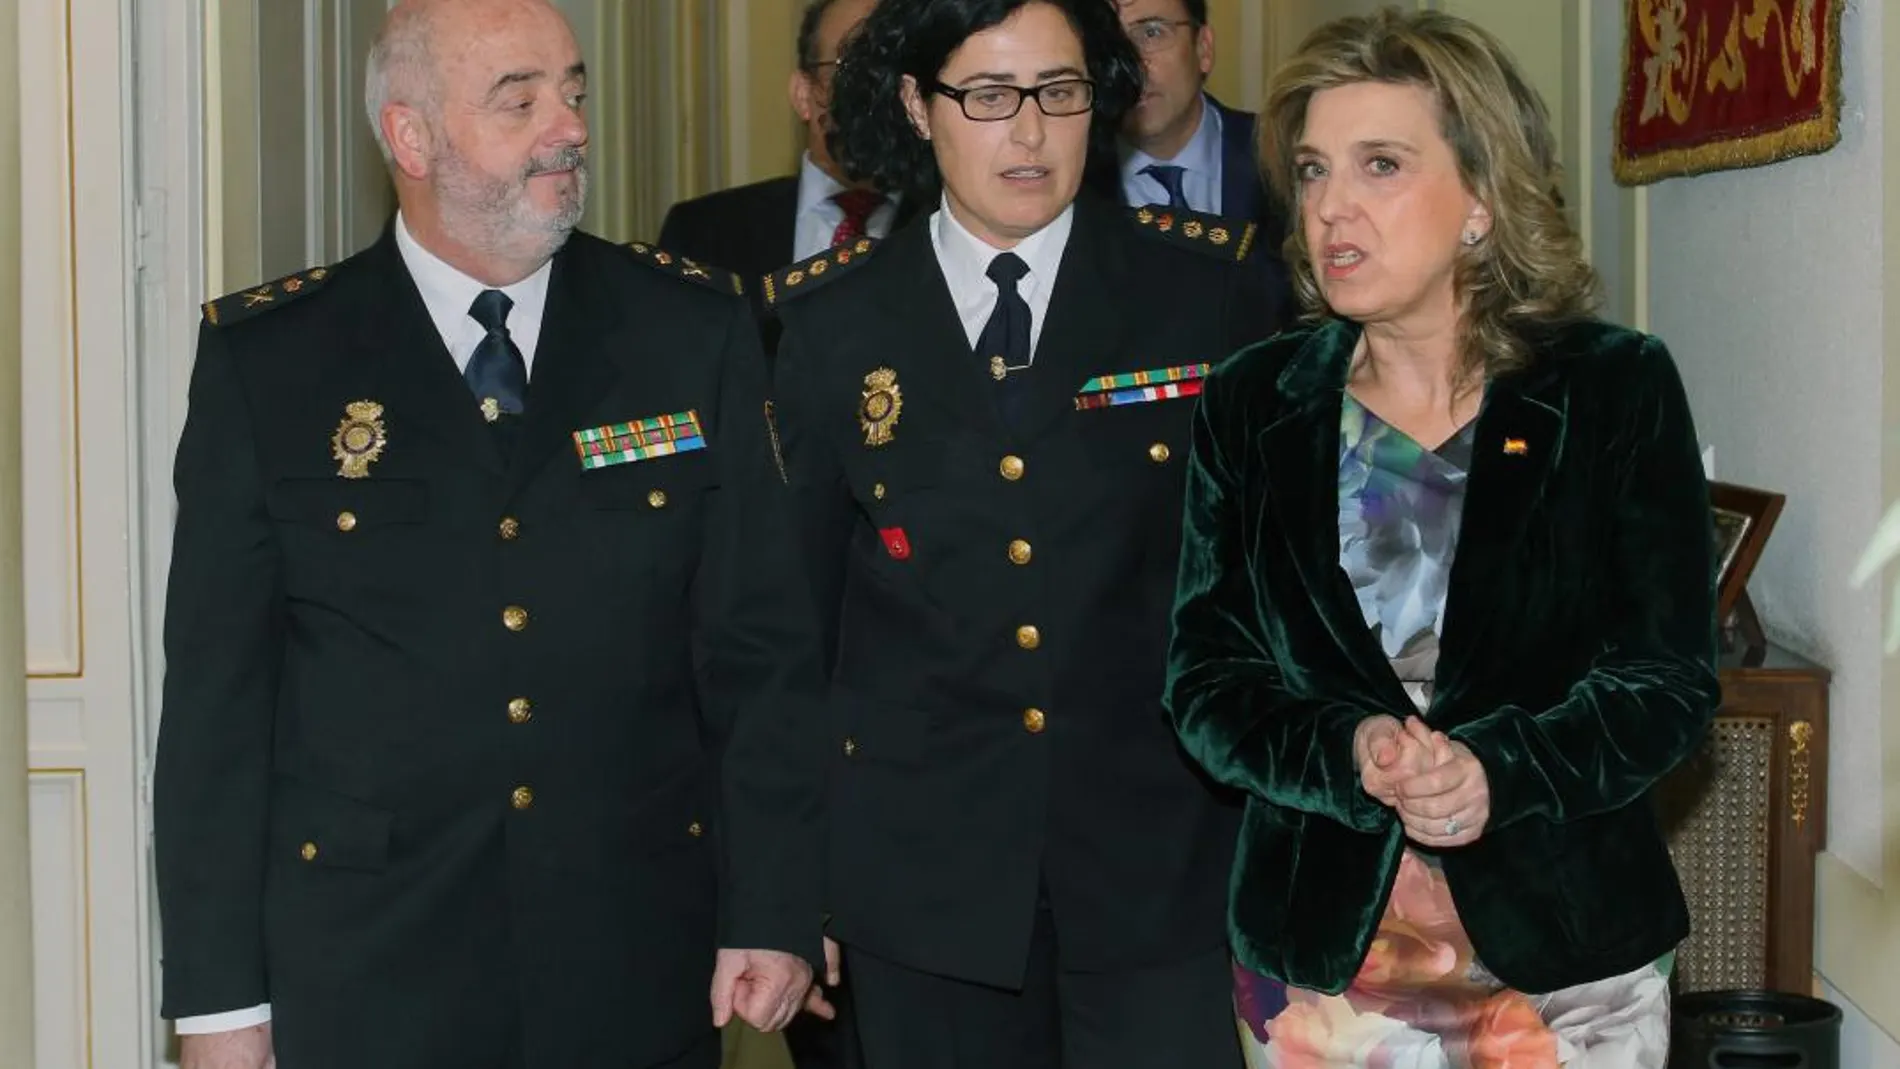 La delegada María José Salgueiro conversa con la nueva comisaria de Palencia, Montserrat Marín, y Jorge Zurita